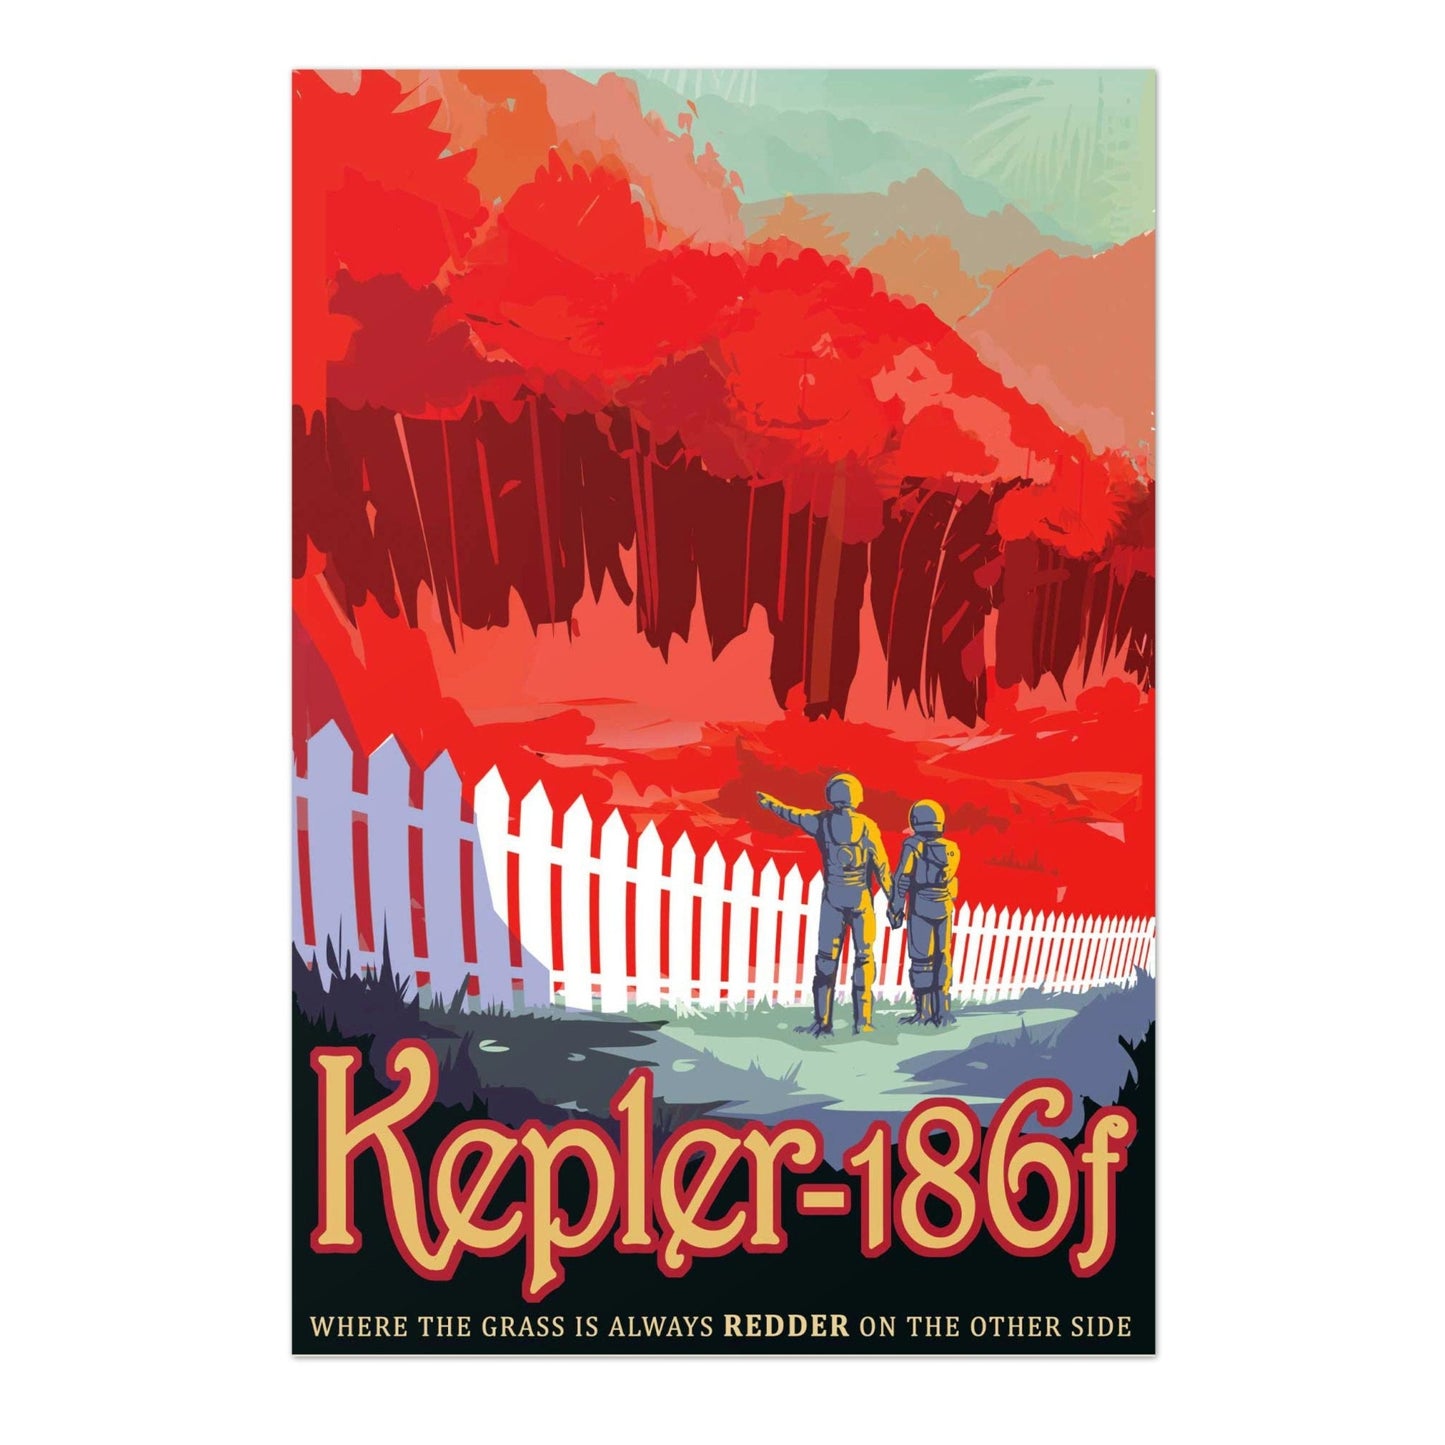 NASA Visions Of The Future - Kepler-186f